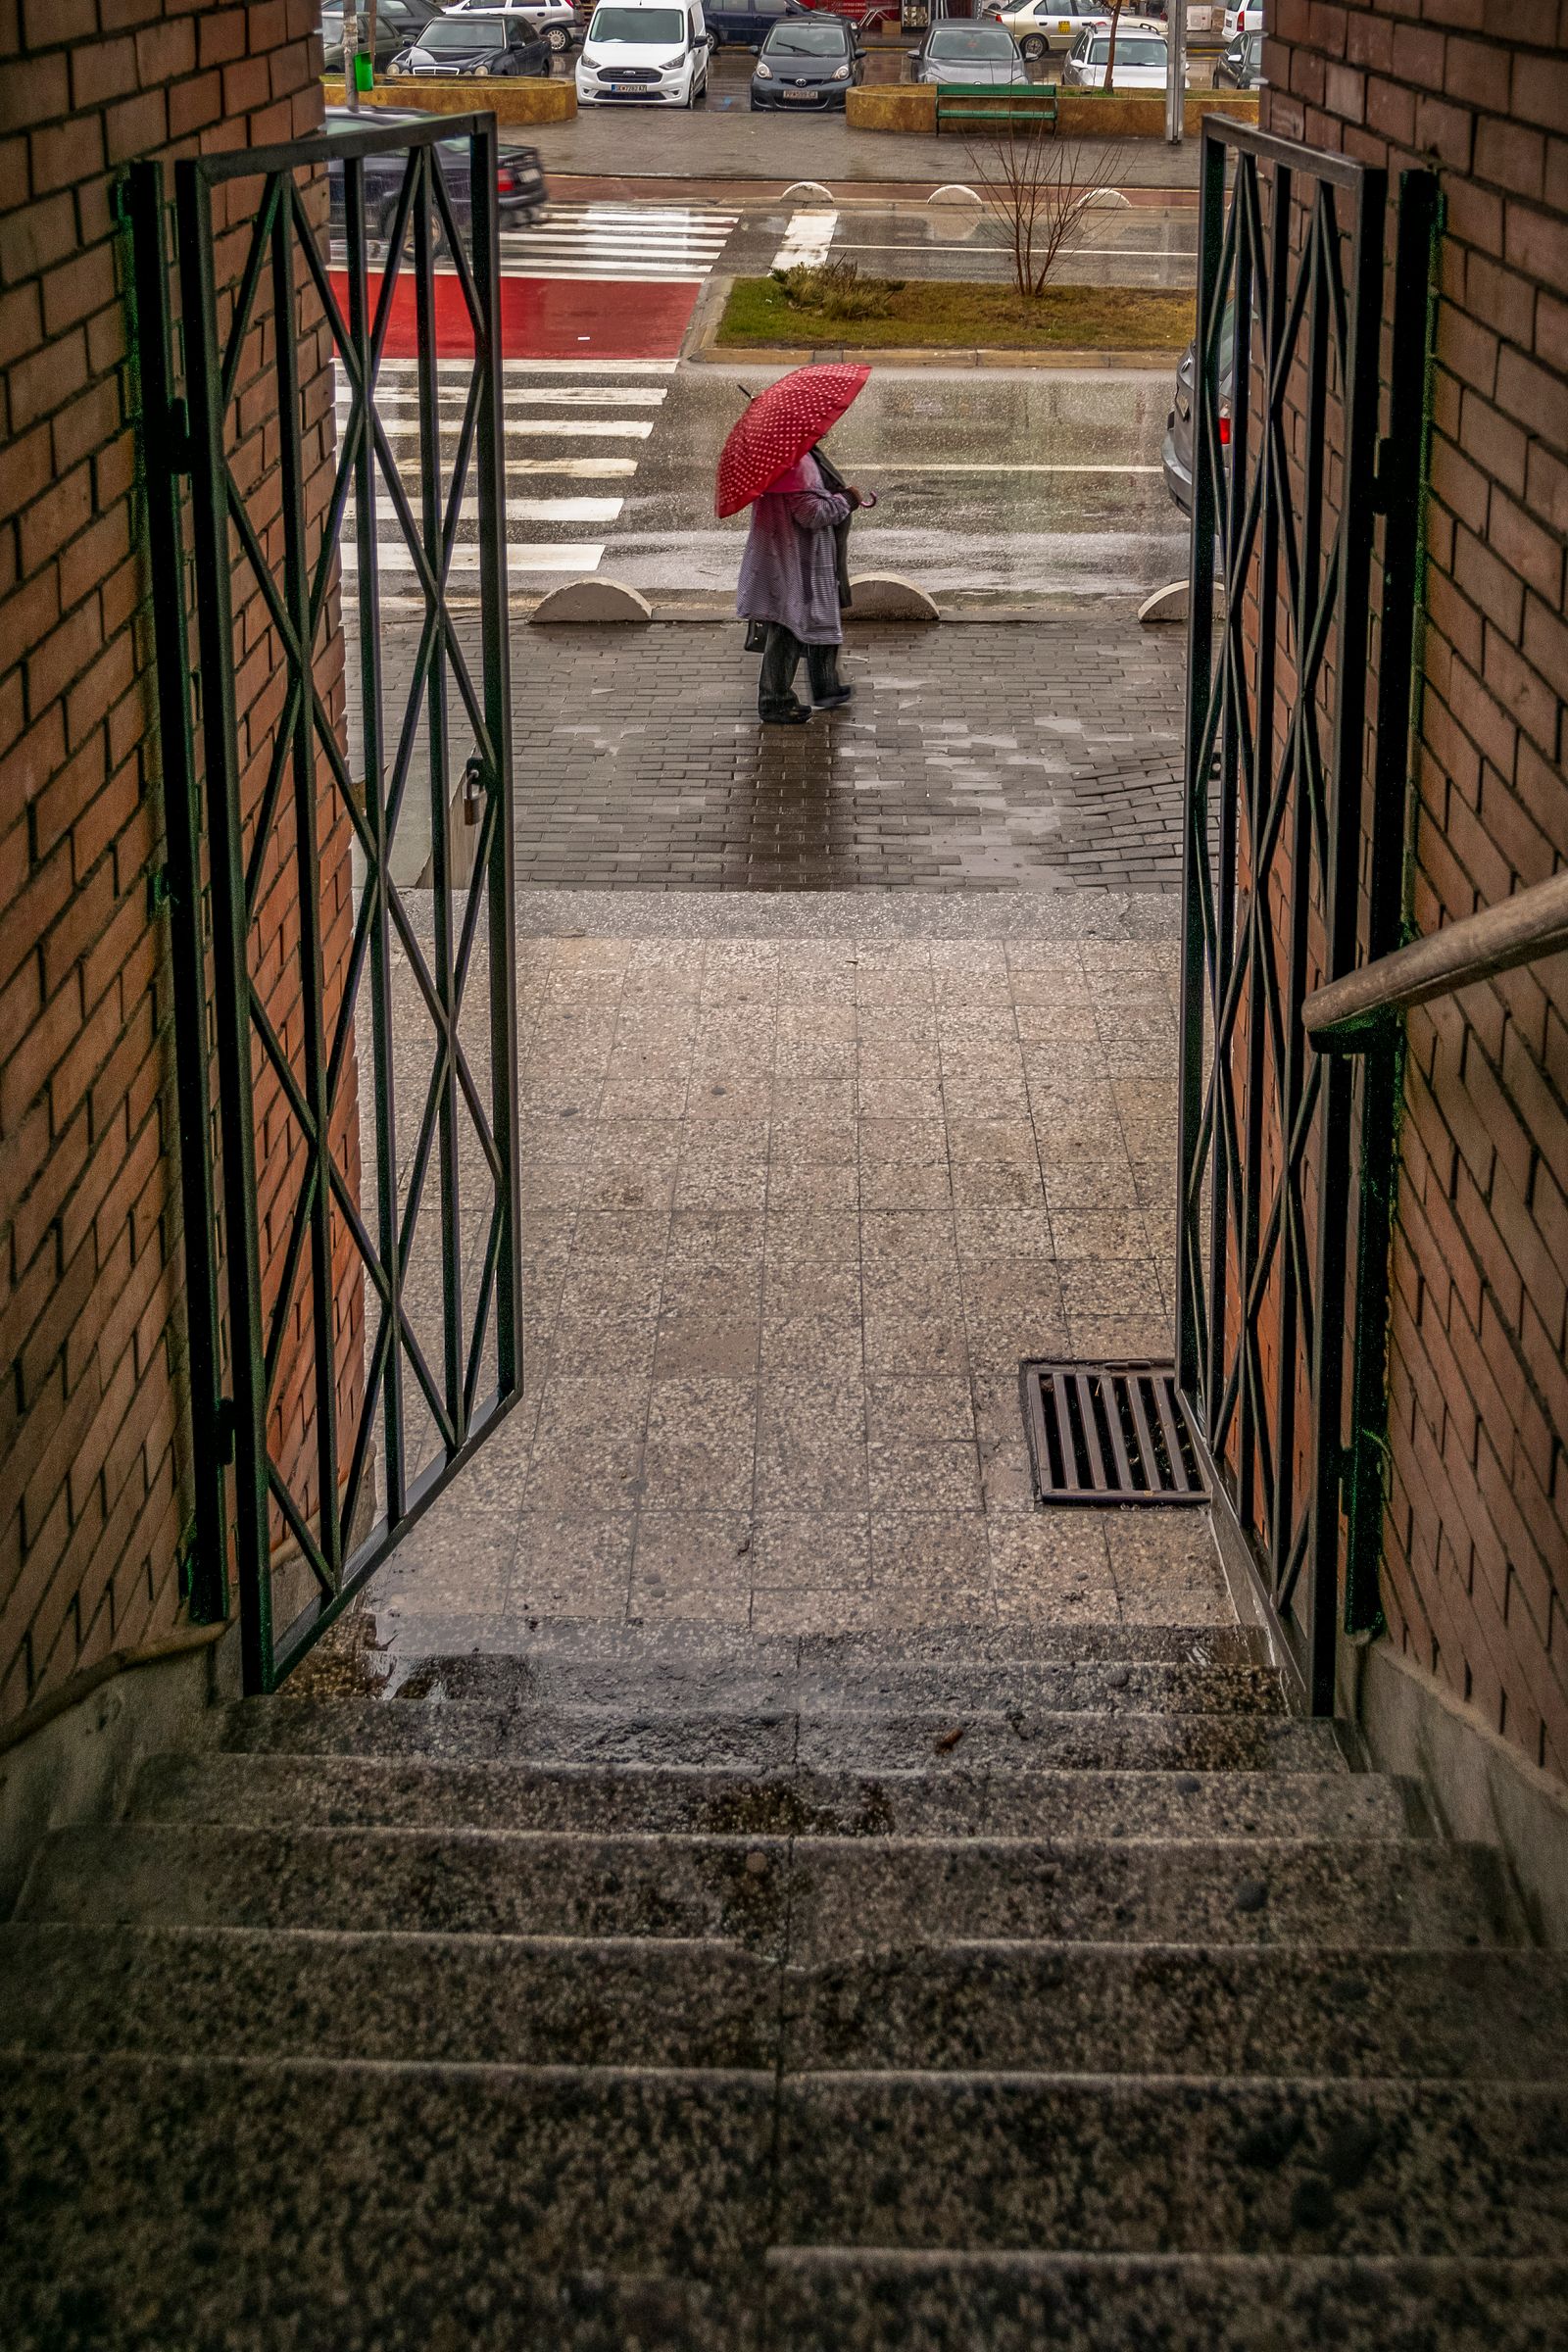 © Meri Boshkoska - The red umbrella